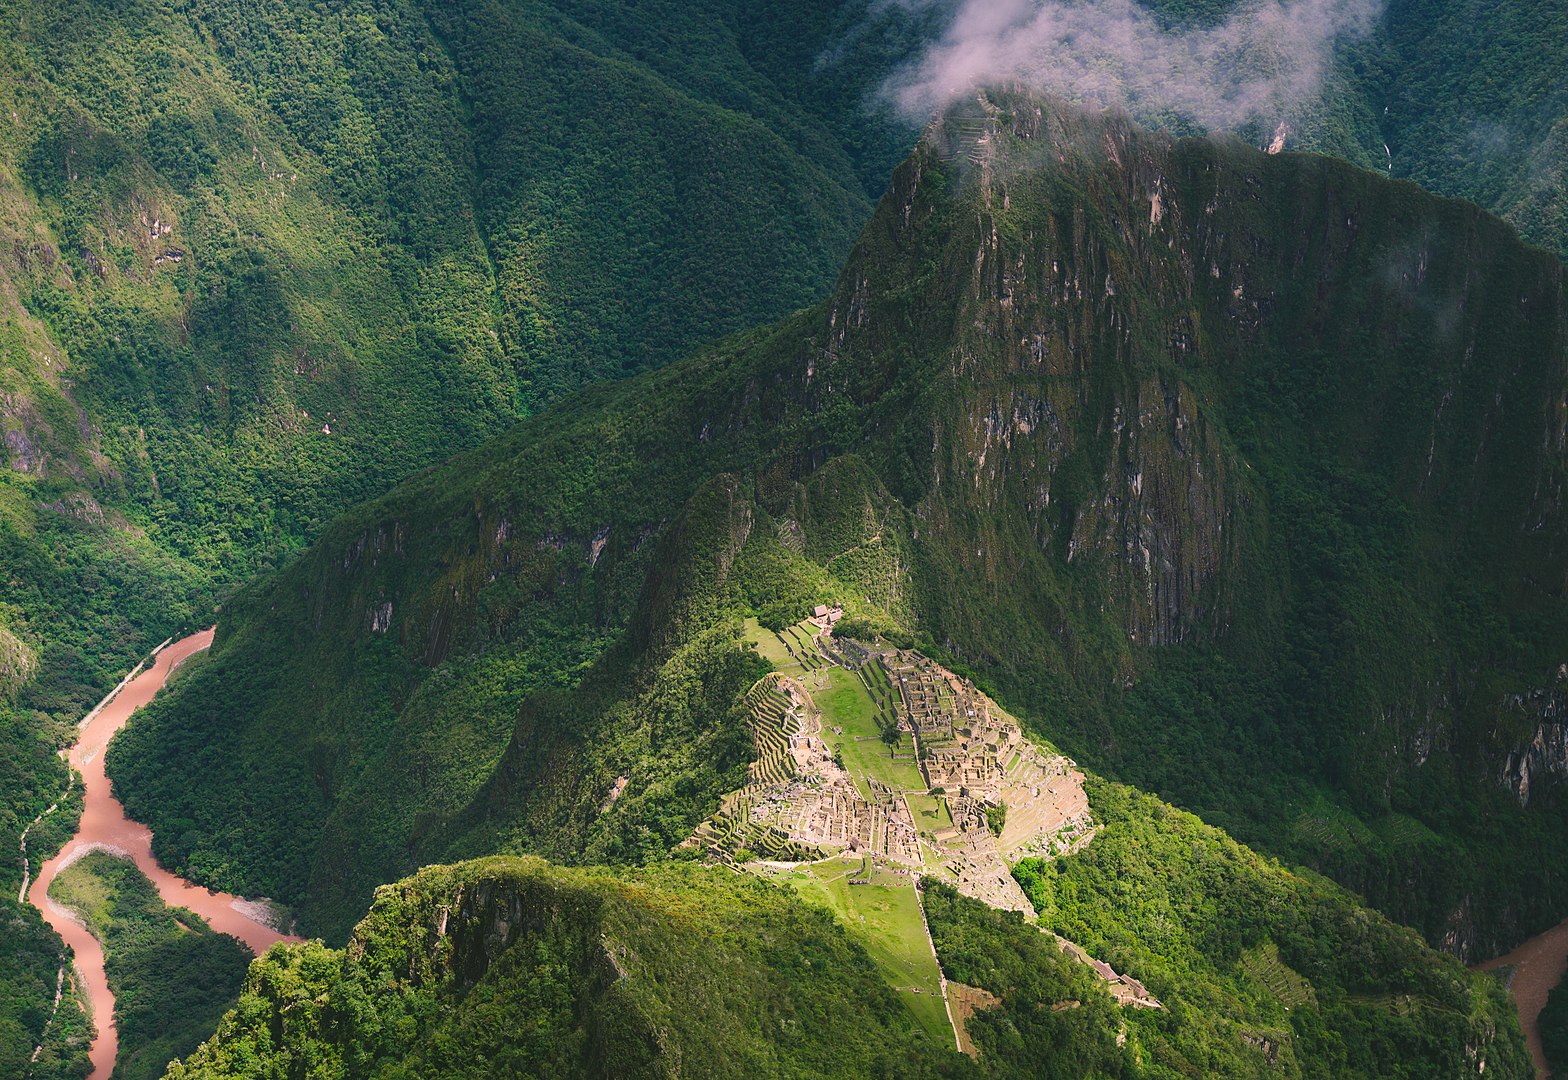 14 de julio de 1902 Agustín Lizárraga descubría las ruinas de Machu Picchu